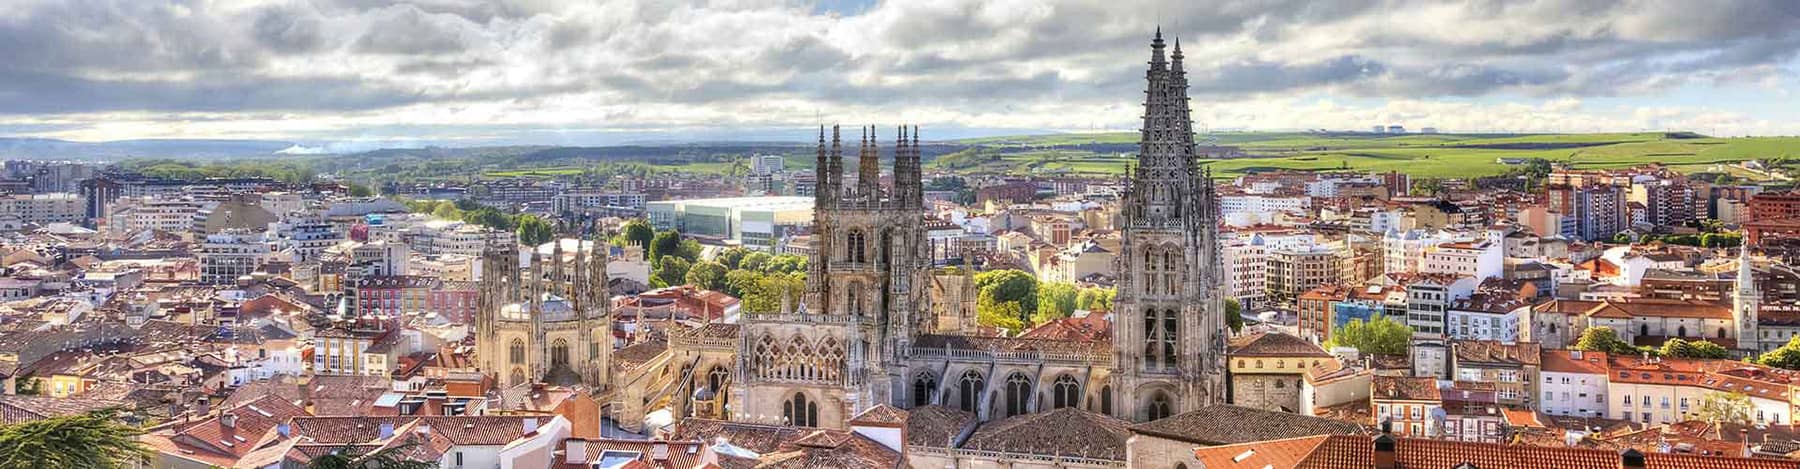 Przewodnik turystyczny po Burgos- Burgos, gotycka katedra ukończona w XVI wieku